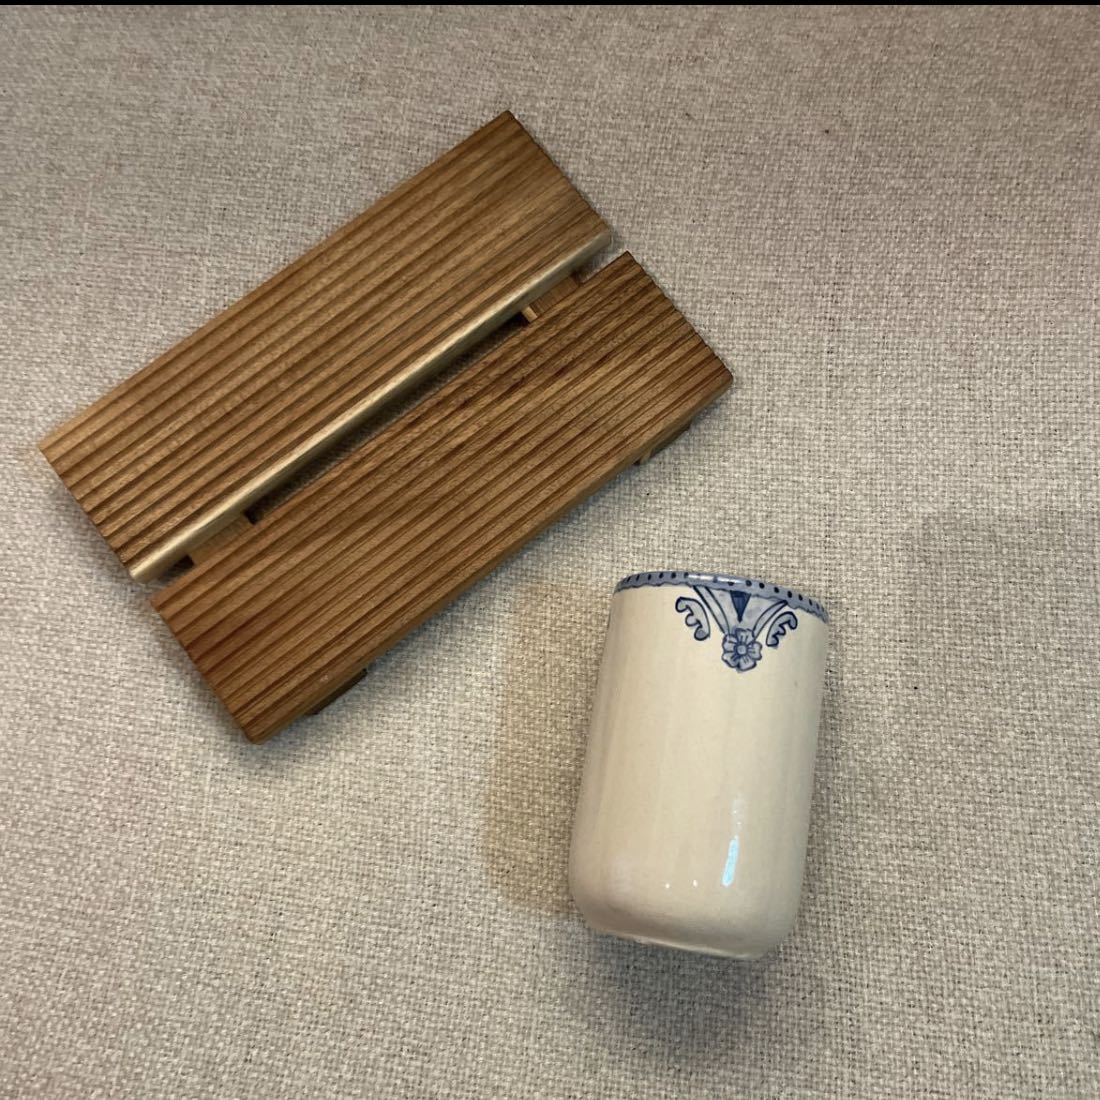  Zara Home из дерева tray зубная щетка подставка керамика подставка комплект не использовался стакан cup автобус интерьер ZARA HOME гигиенический 